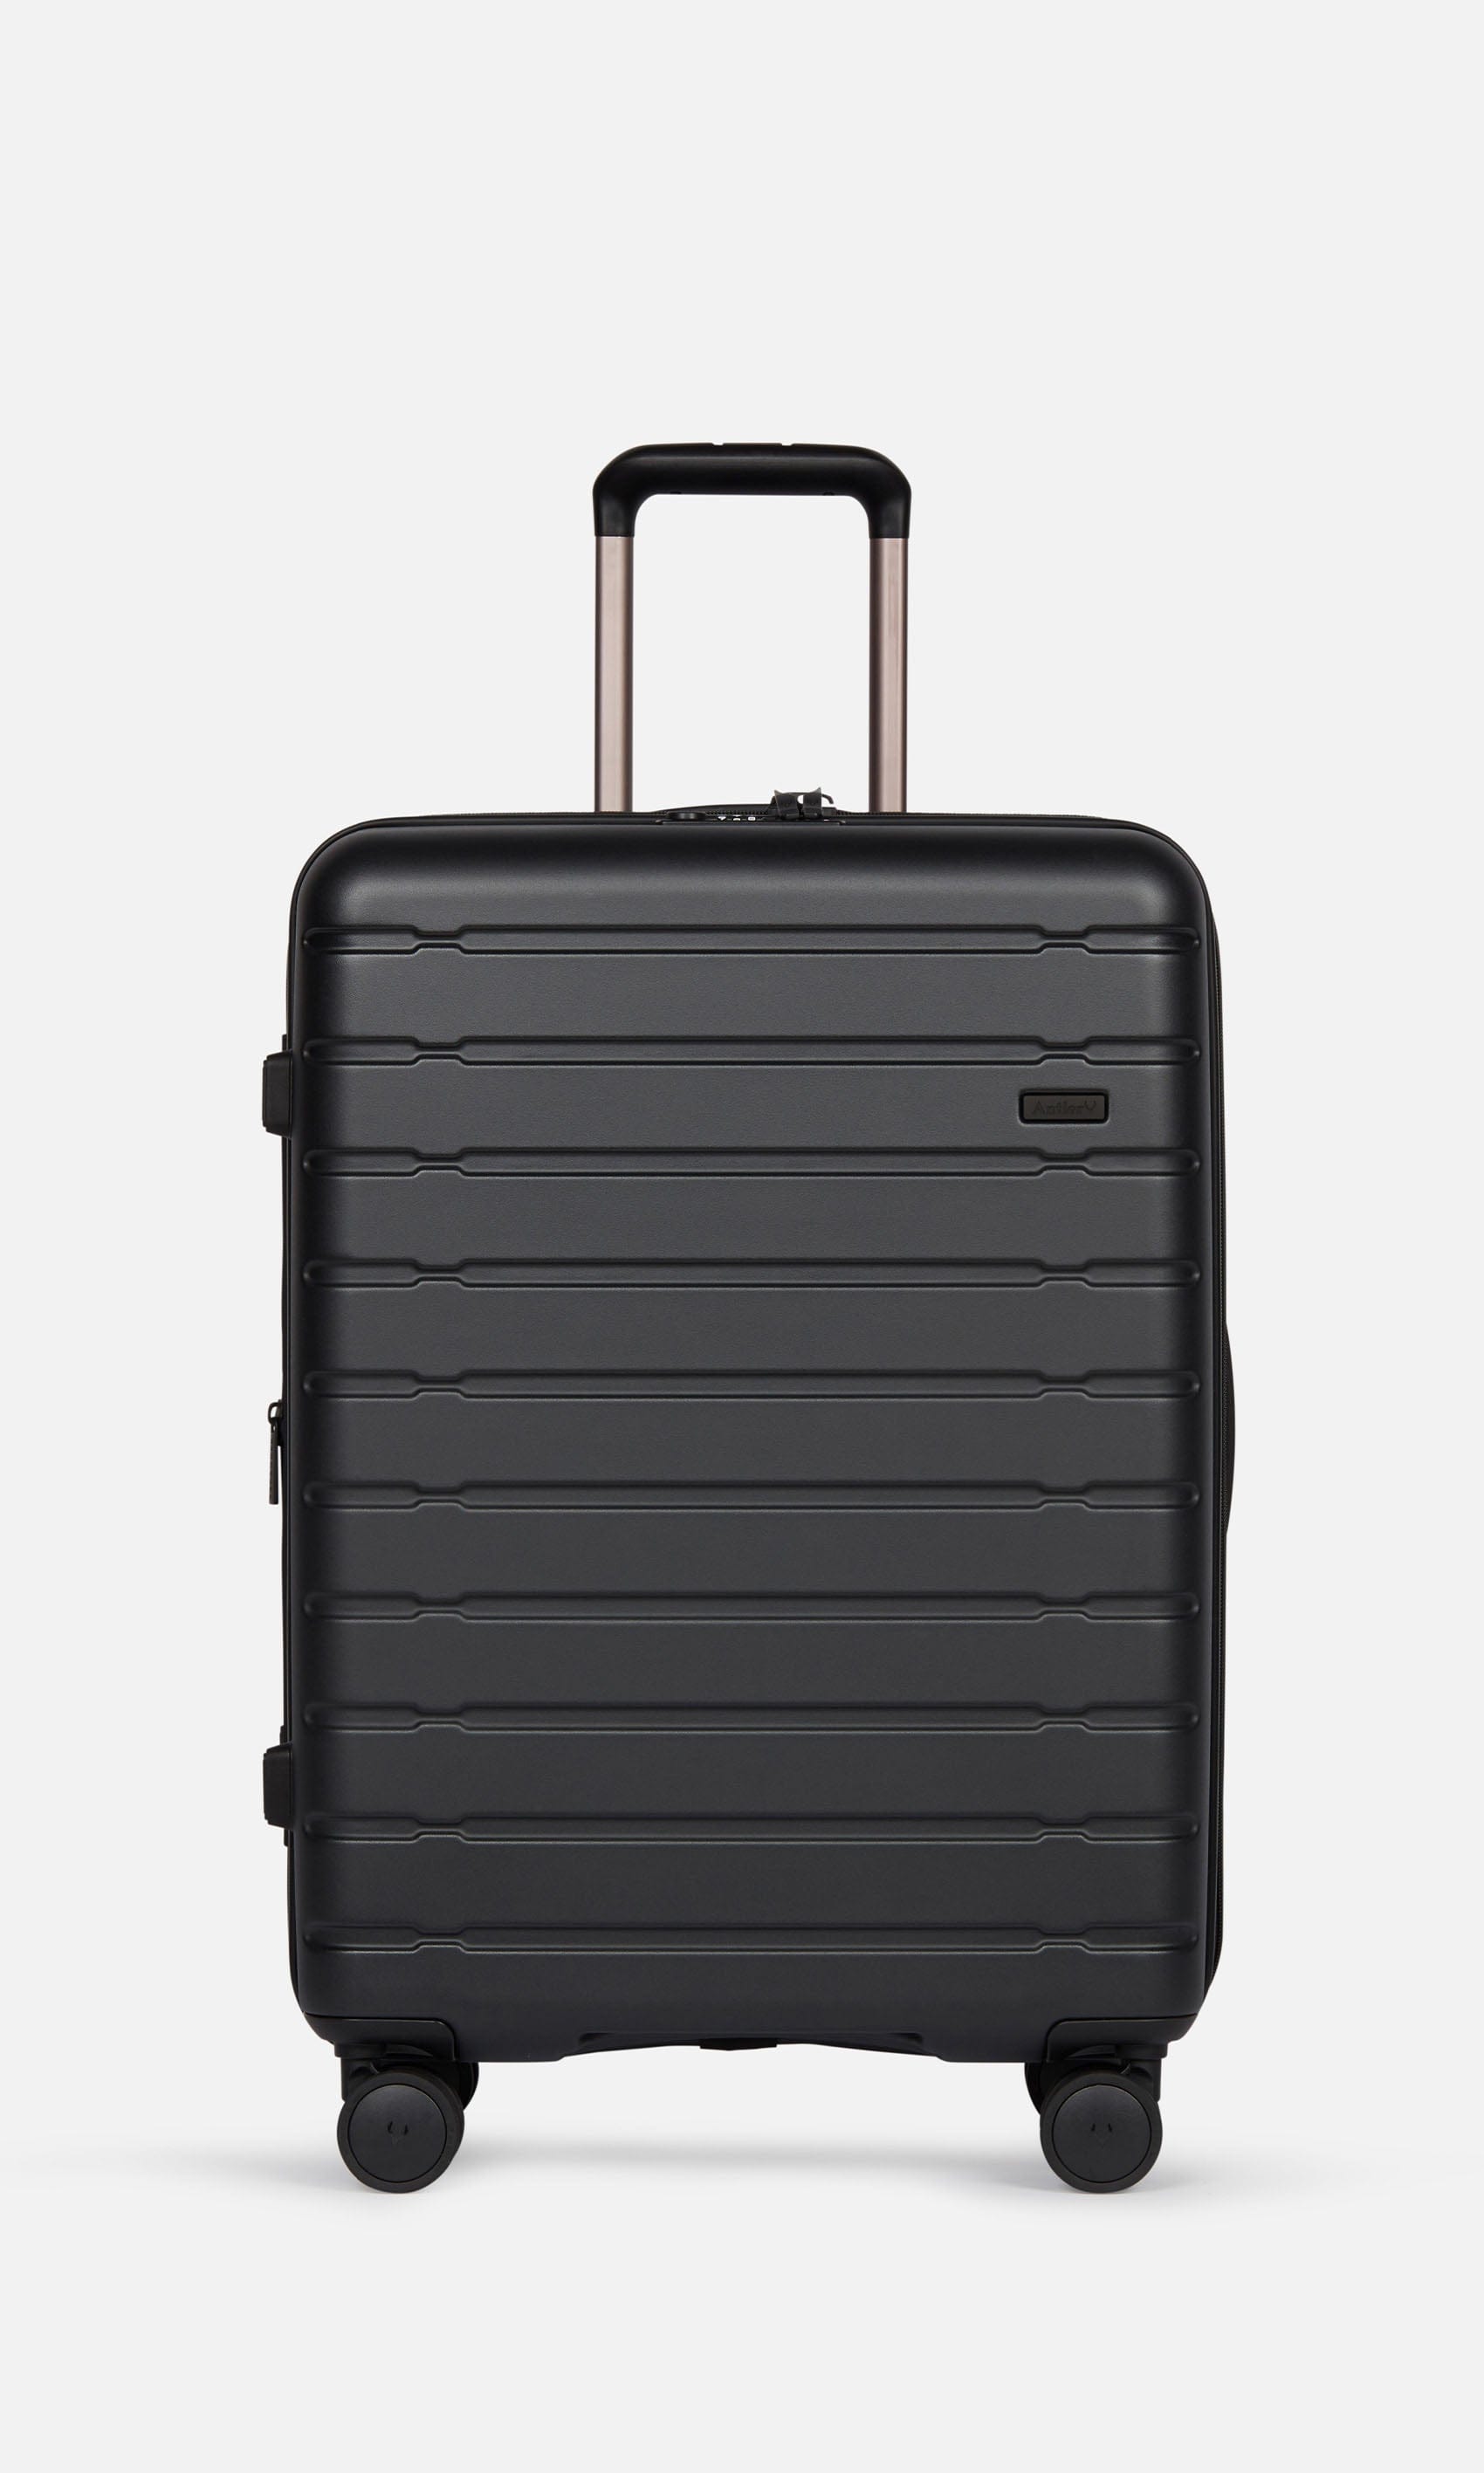 View Antler Stamford Medium Suitcase In Black Size 683 x 48 x 295 cm information